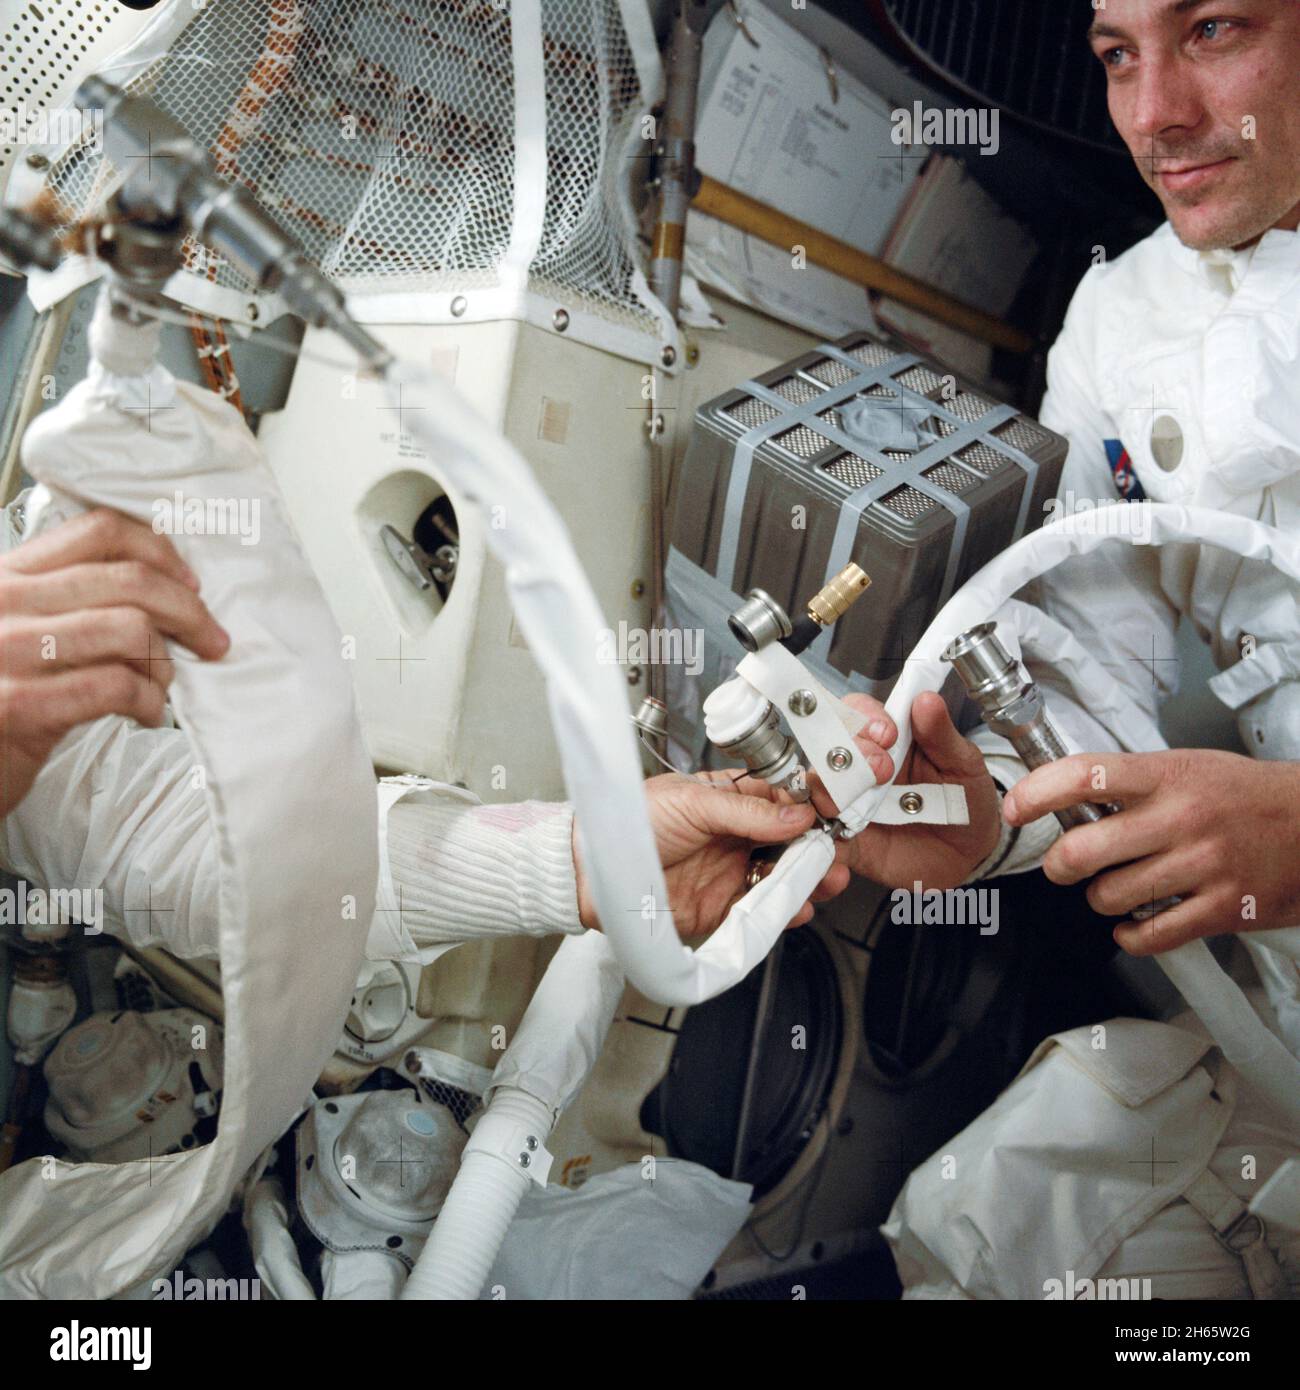 Eine Innenansicht der Apollo 13 Mondlandefähre (LM) während der von den Schwierigkeiten geplagten Reise zurück zur Erde. Dieses Foto zeigt einige der provisorischen Schlauchanschlüsse und Geräte, die notwendig waren, als die drei Apollo-Astronauten vom Command Module (CM) zur Verwendung des LM als „Rettungsboot“ umzogen. Astronaut John L. Swigert Jr., Kommandomodulpilot, befindet sich auf der rechten Seite. CM-Lithiumhydroxid-Kanister zum Abreiben von CO2 aus der Atmosphäre des Raumschiffs. Stockfoto